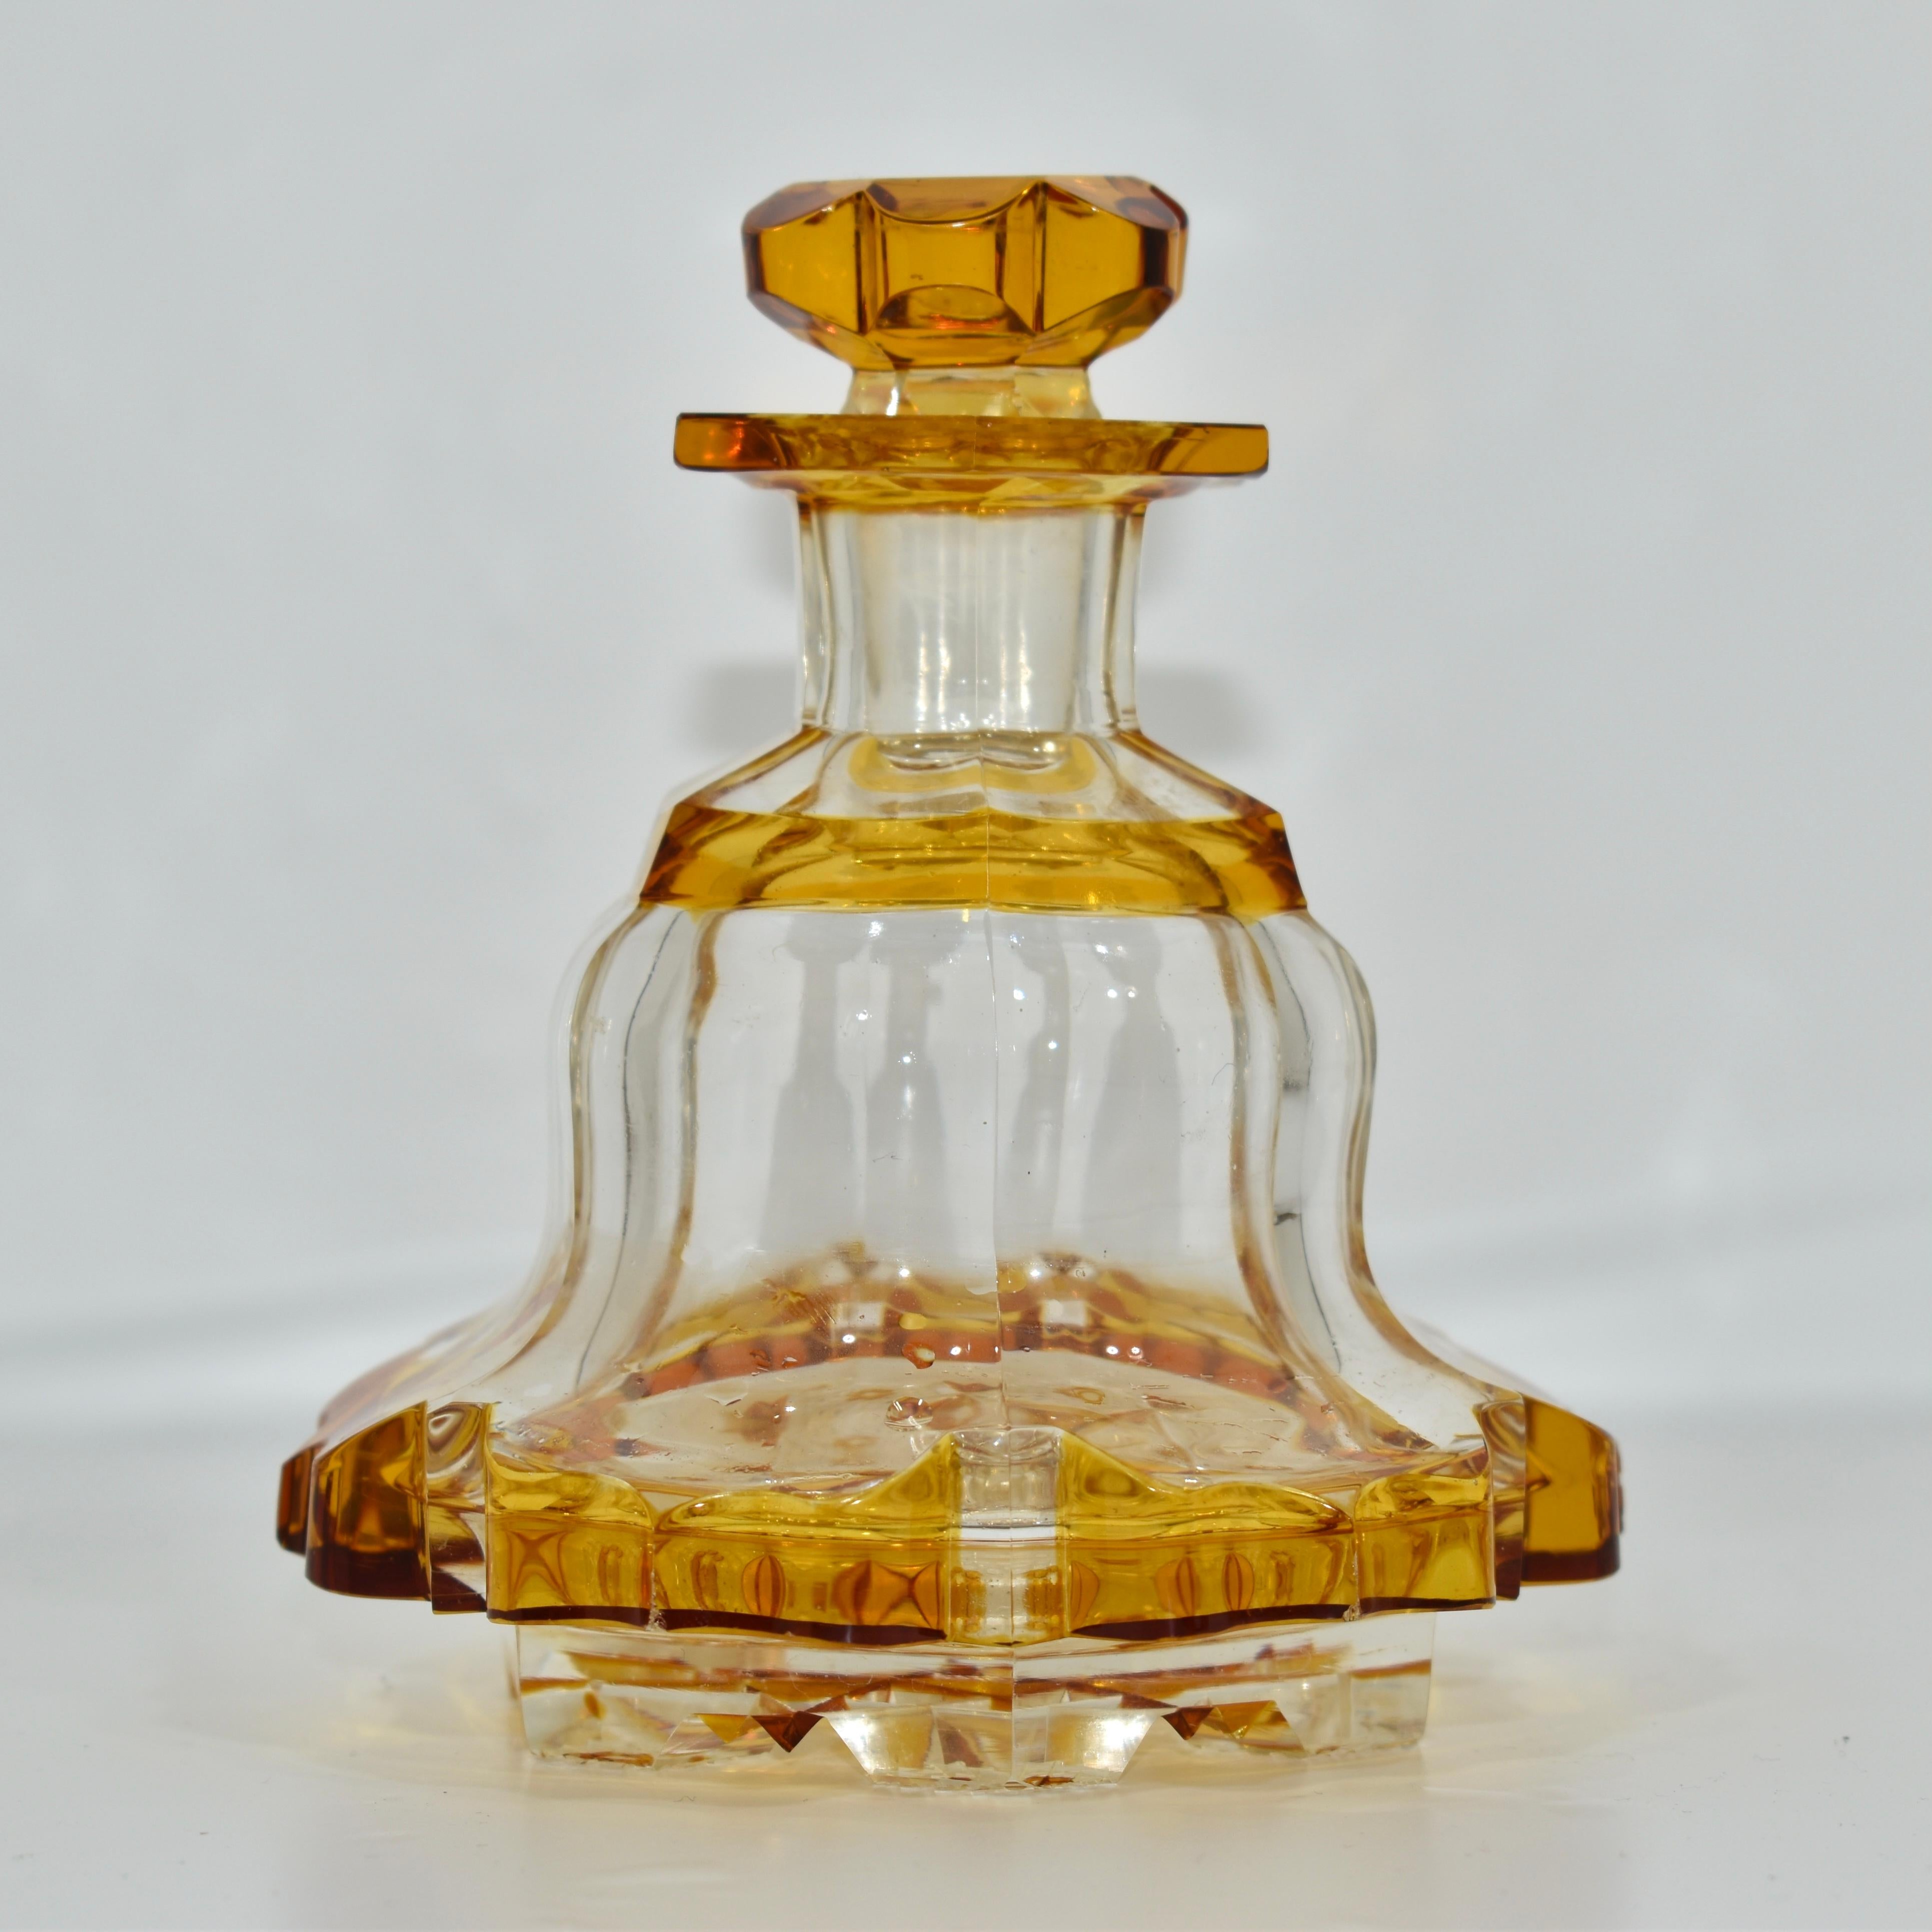 Antike Parfümflasche, mit Stopfen, sehr seltenes klares und bernsteinfarbenes Kristallglas

tief handgeschnitten in Form eines Sechssterns an der Unterseite

der brillant geschliffene Sockel an der Unterseite zeigt die Qualität und Authentizität